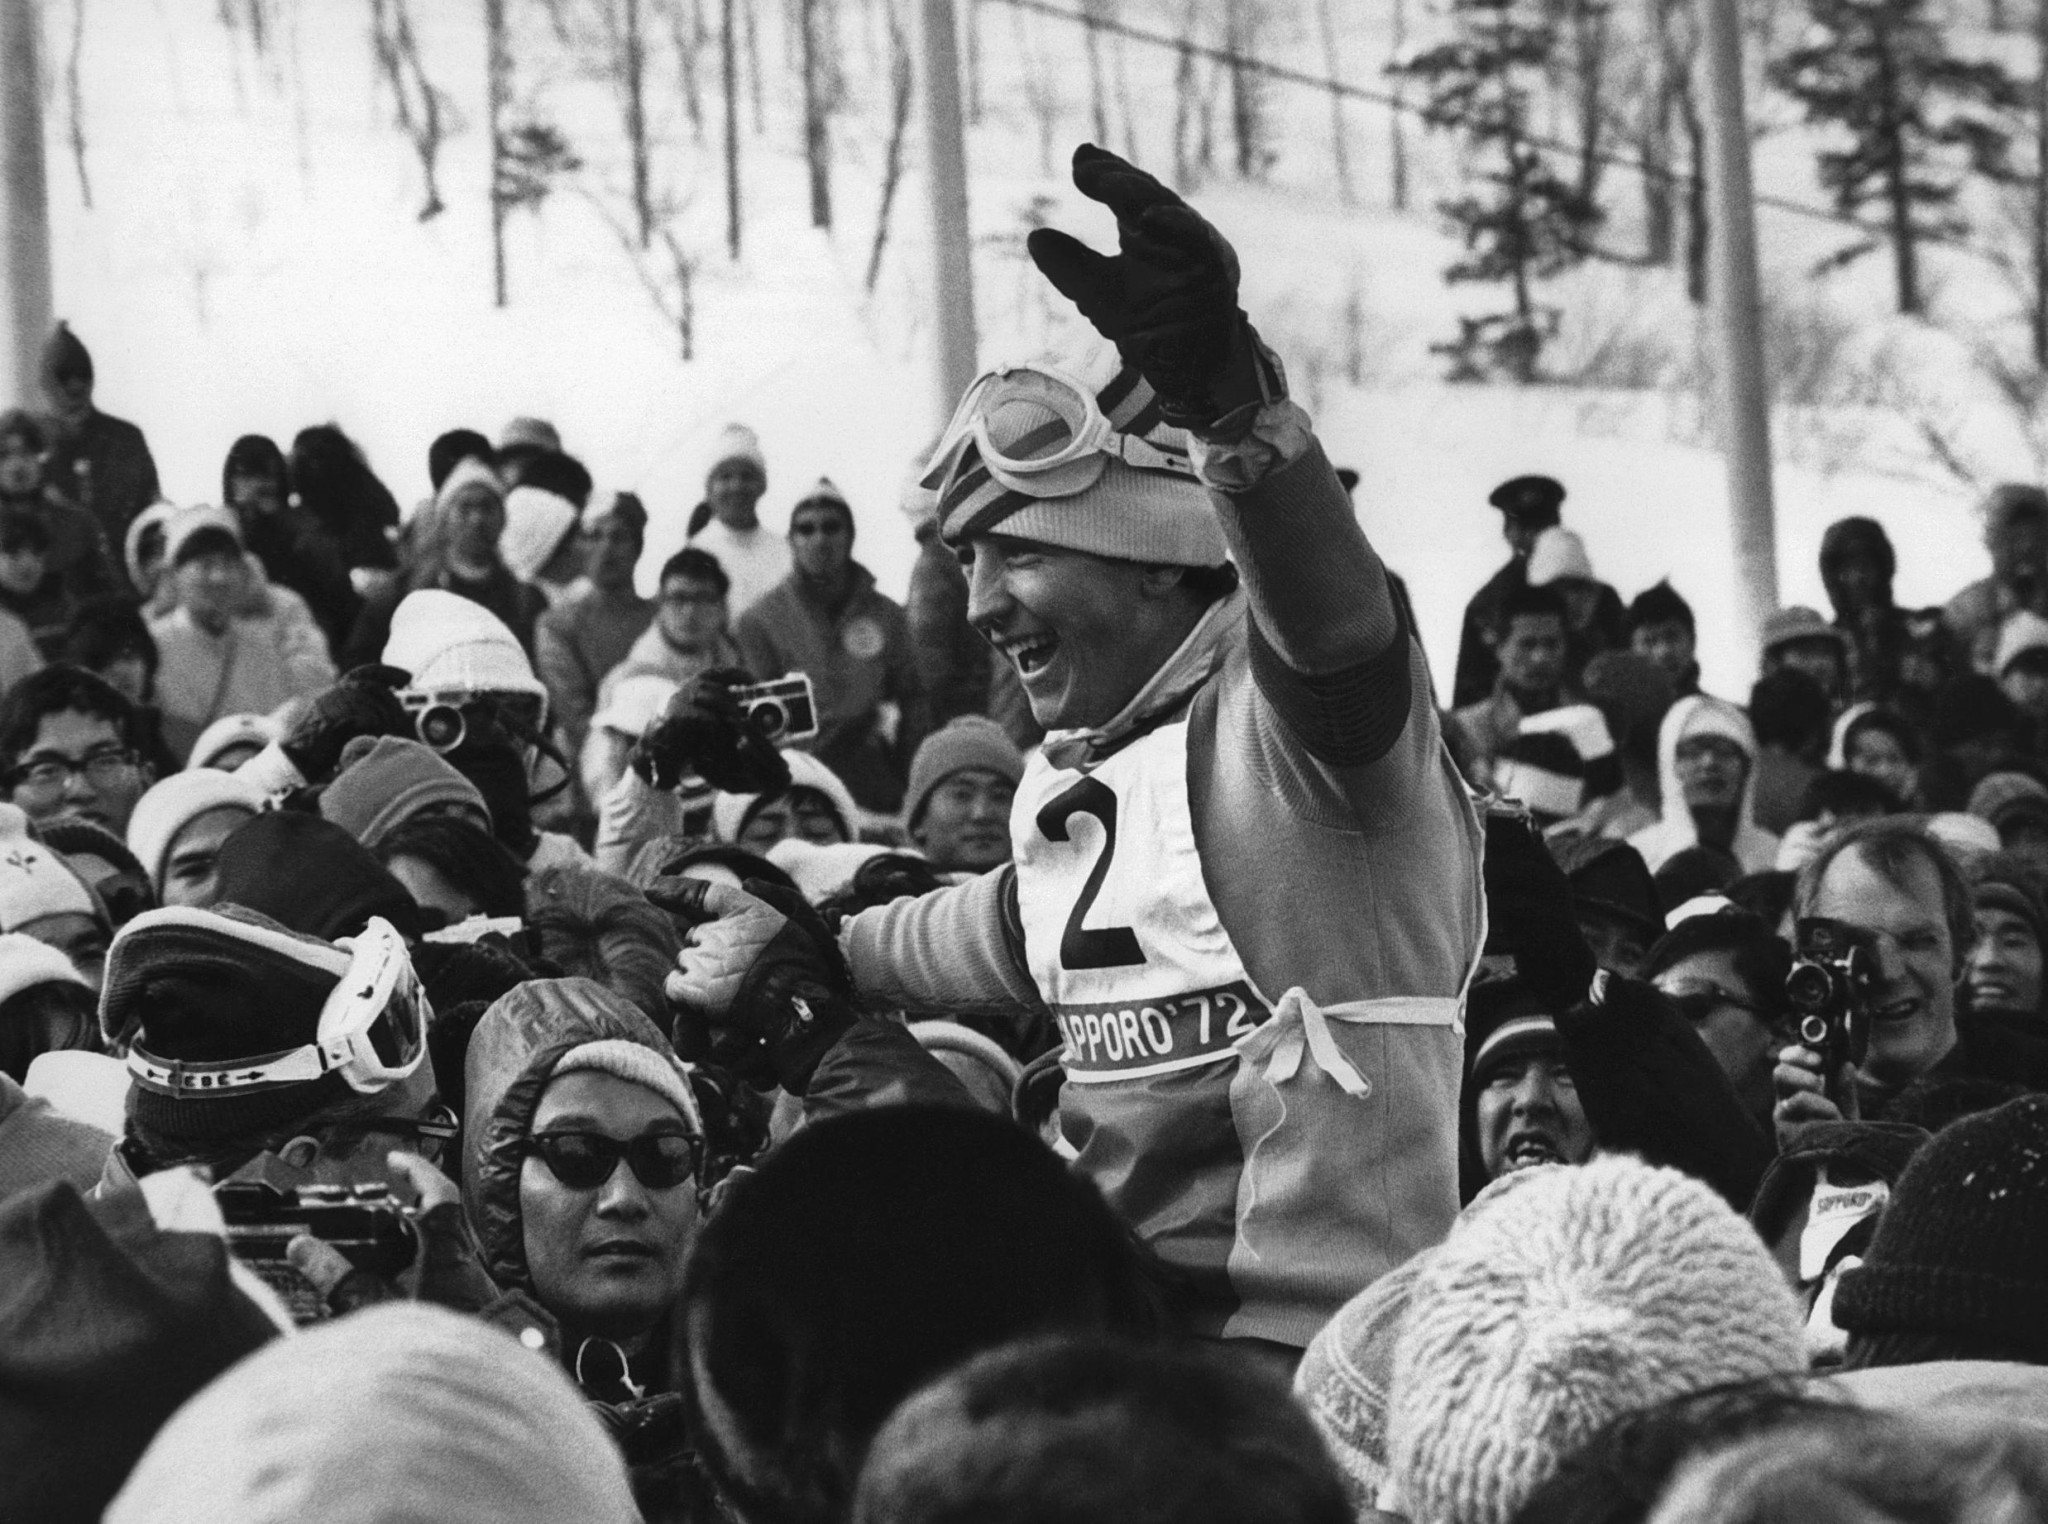 Francisco Fernandez Ochoa celebrates slalom gold at Sapporo 1972 ©Getty Images